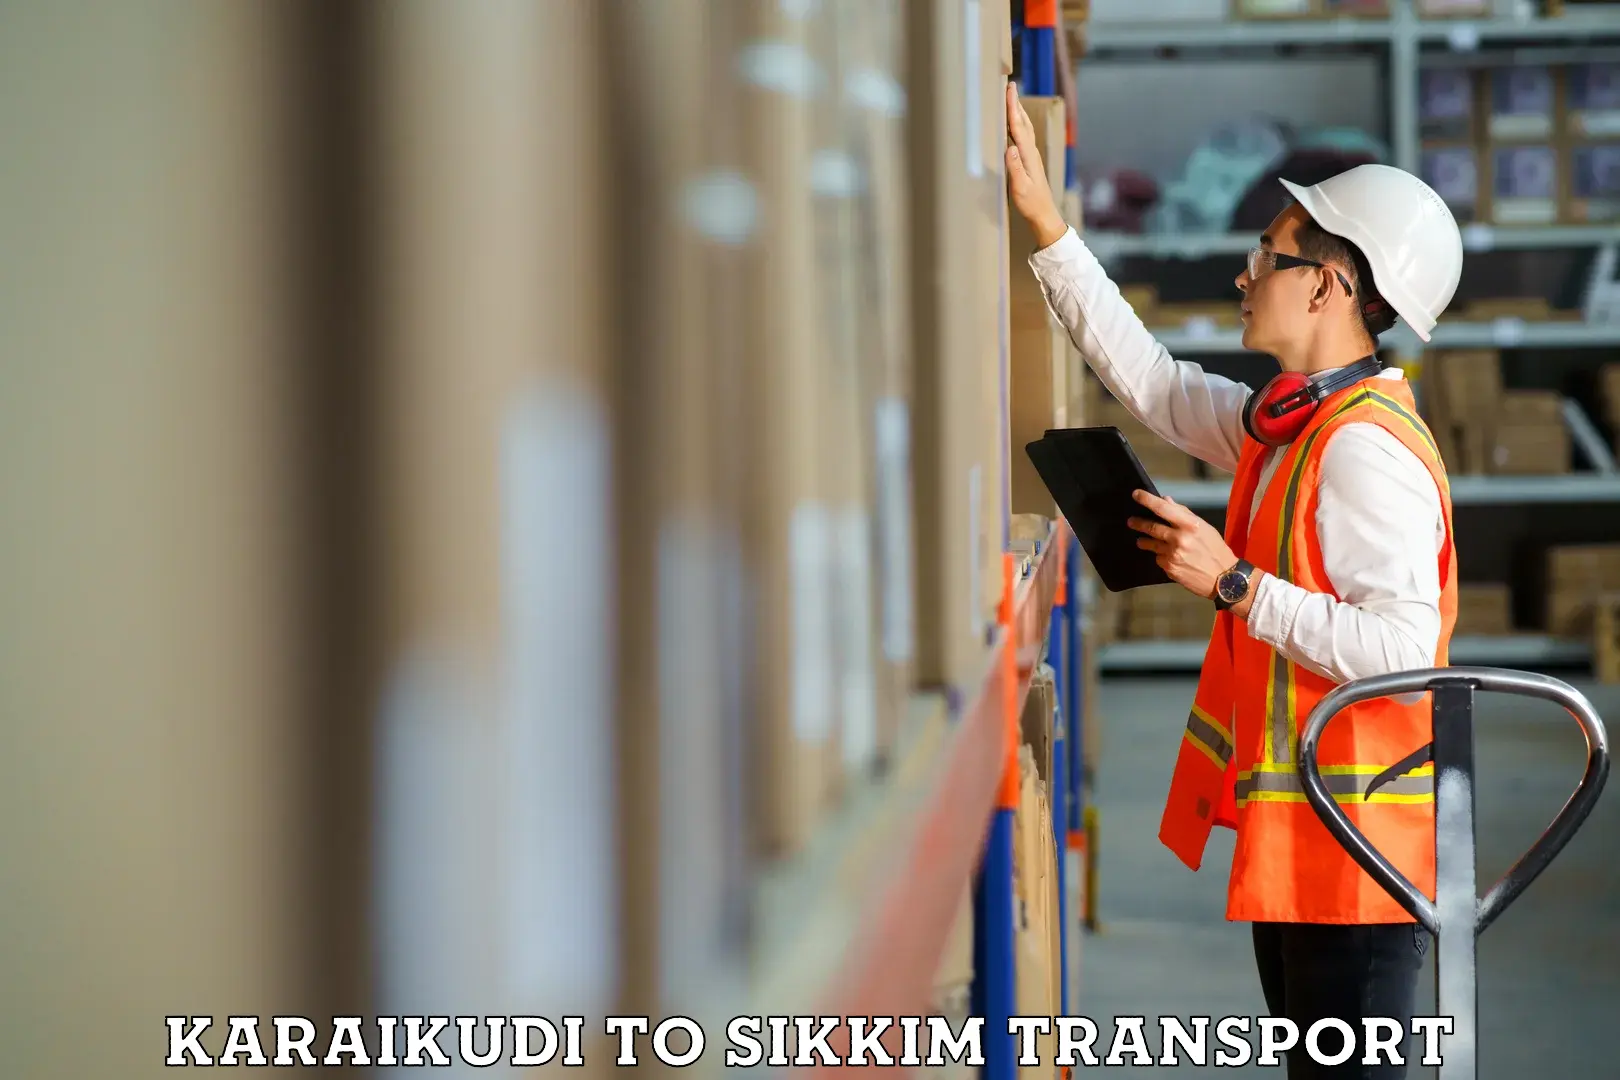 Cycle transportation service Karaikudi to Sikkim